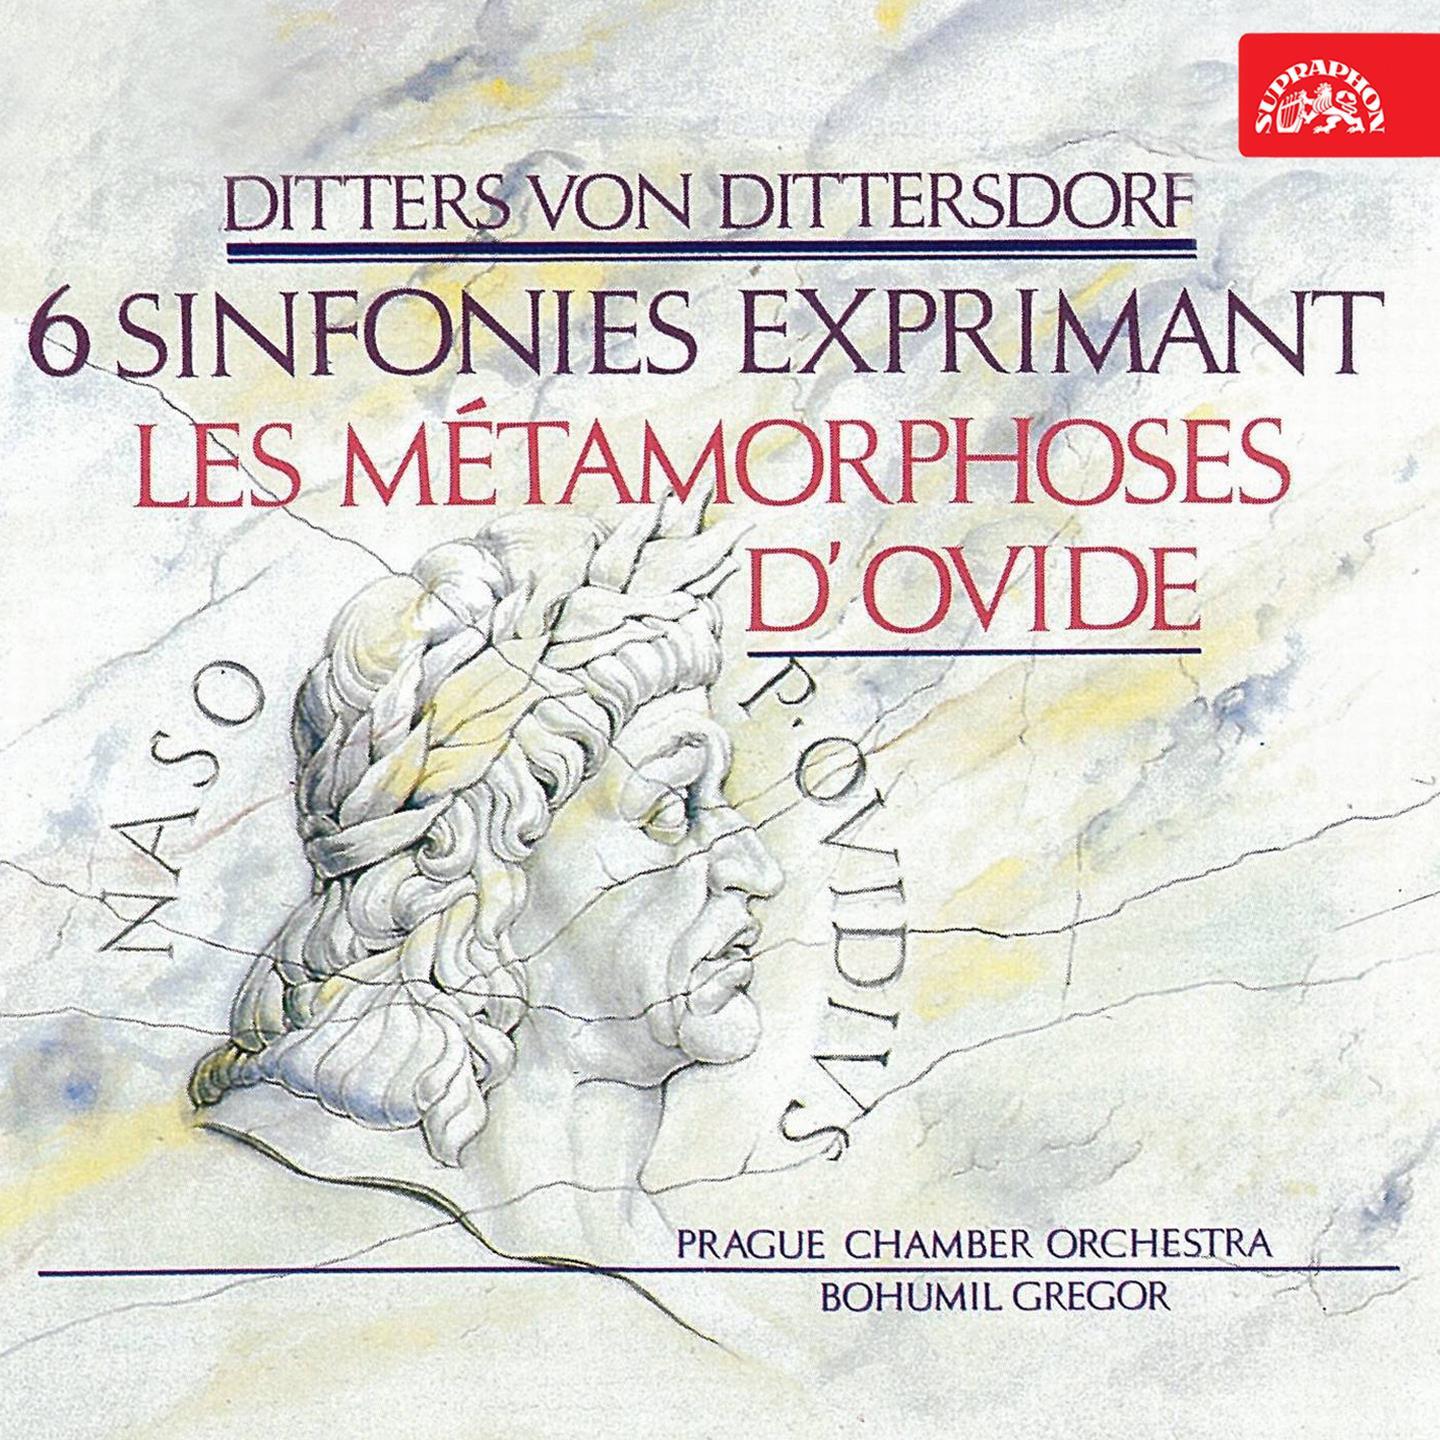 Symphonies After Ovid' s Metamorphoses, No. 6 in A Major, Kr. 78 " Verwandlung der lycischen Bauern in Fr sche": II. Adagio ma non molto